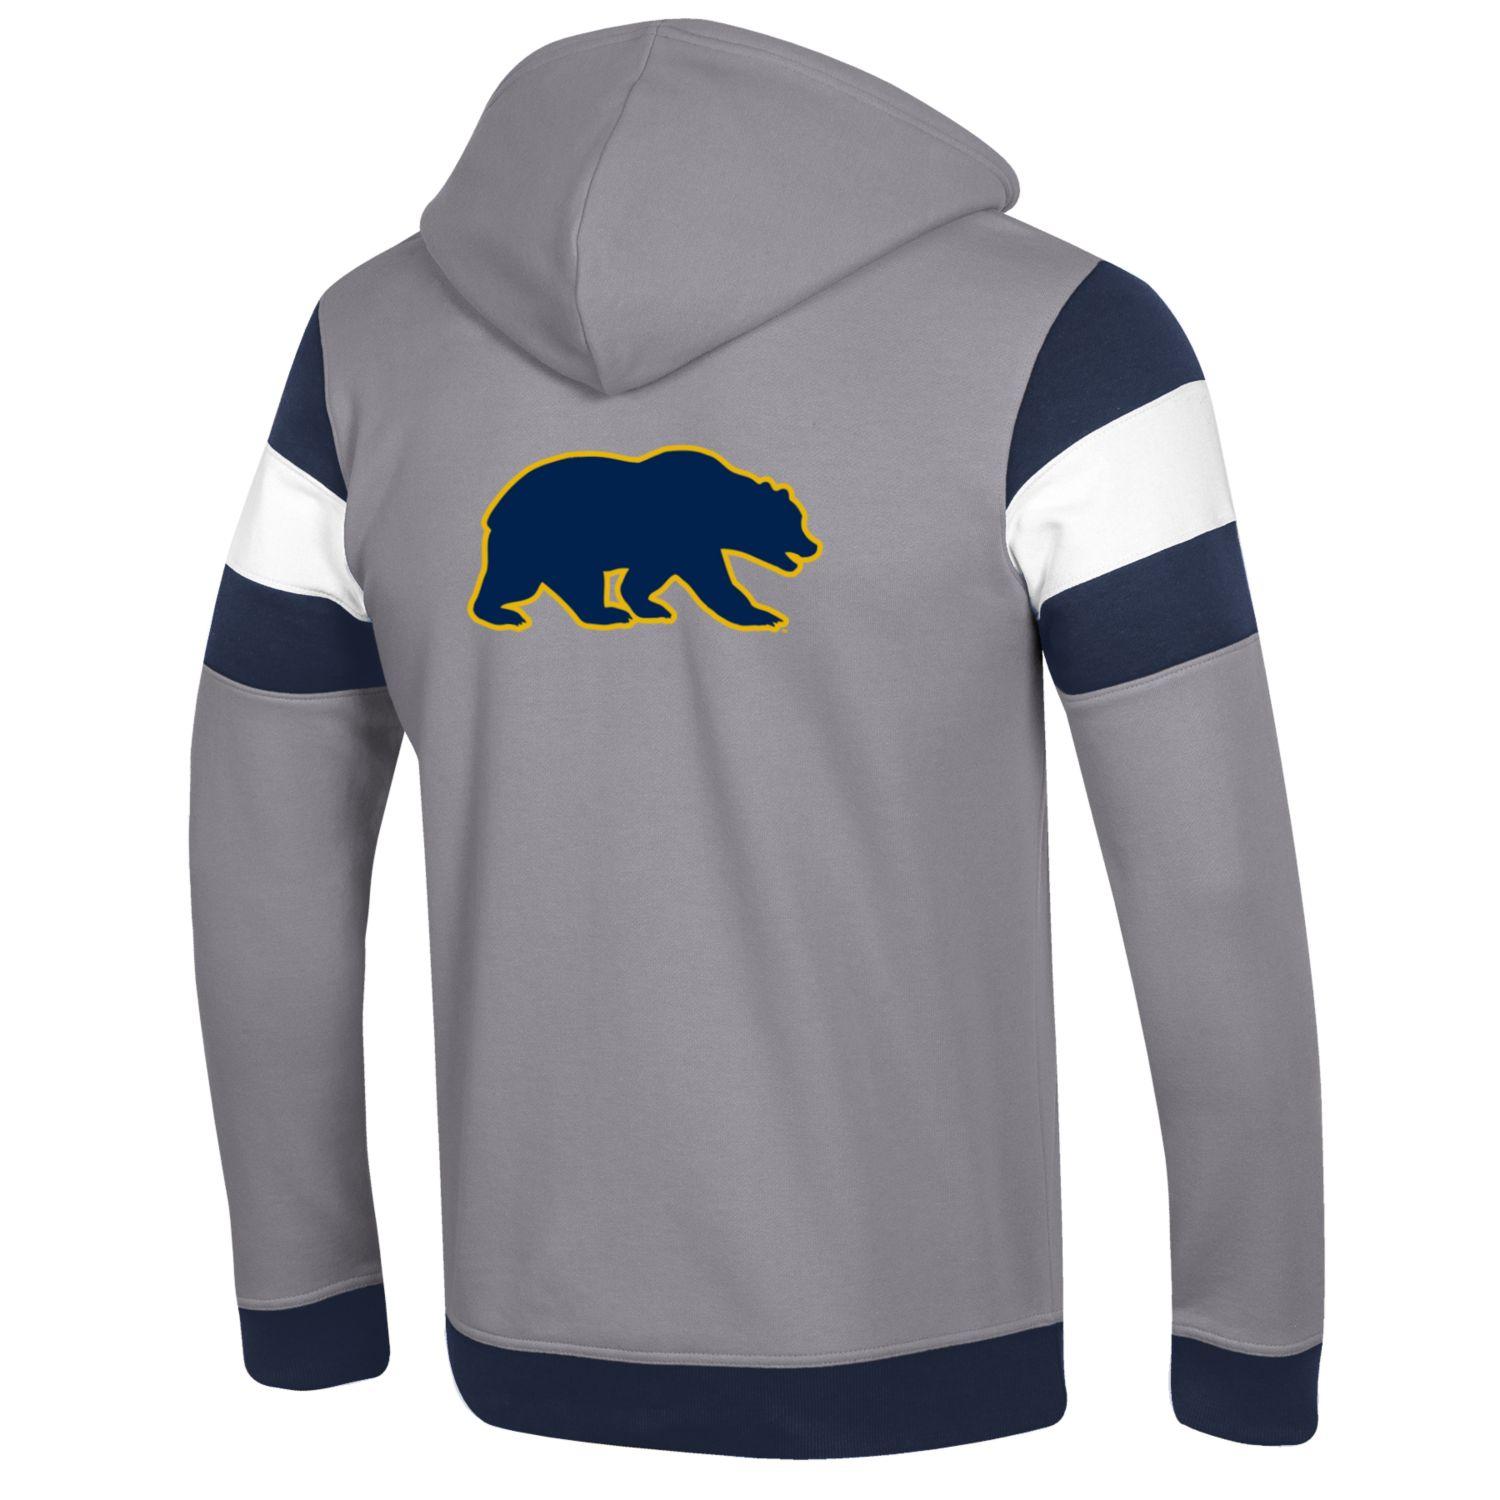 U.C. Berkeley Cal applique Champion heritage zip-Up sweatshirt-Gray-Shop College Wear